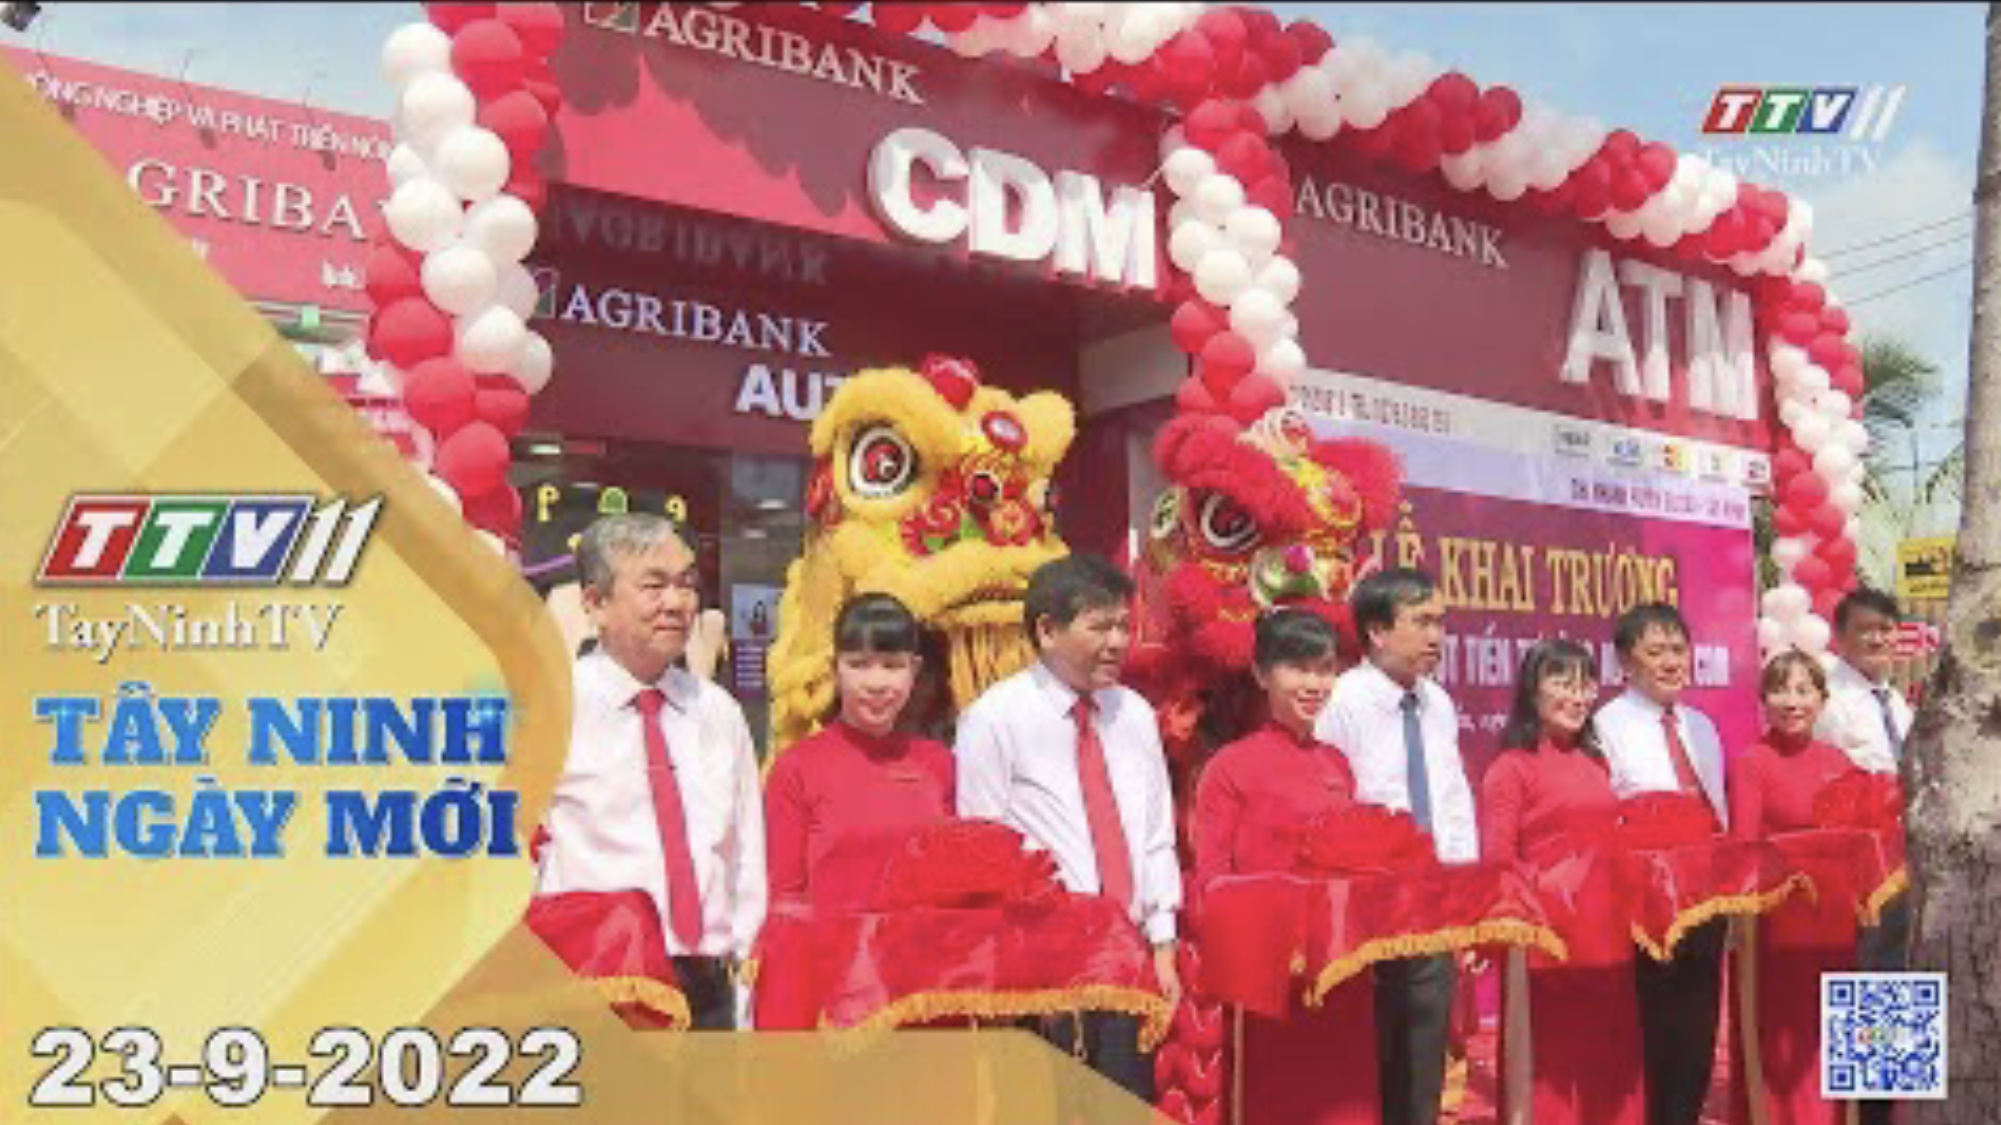 Tây Ninh ngày mới 23-9-2022 | Tin tức hôm nay | TayNinhTV